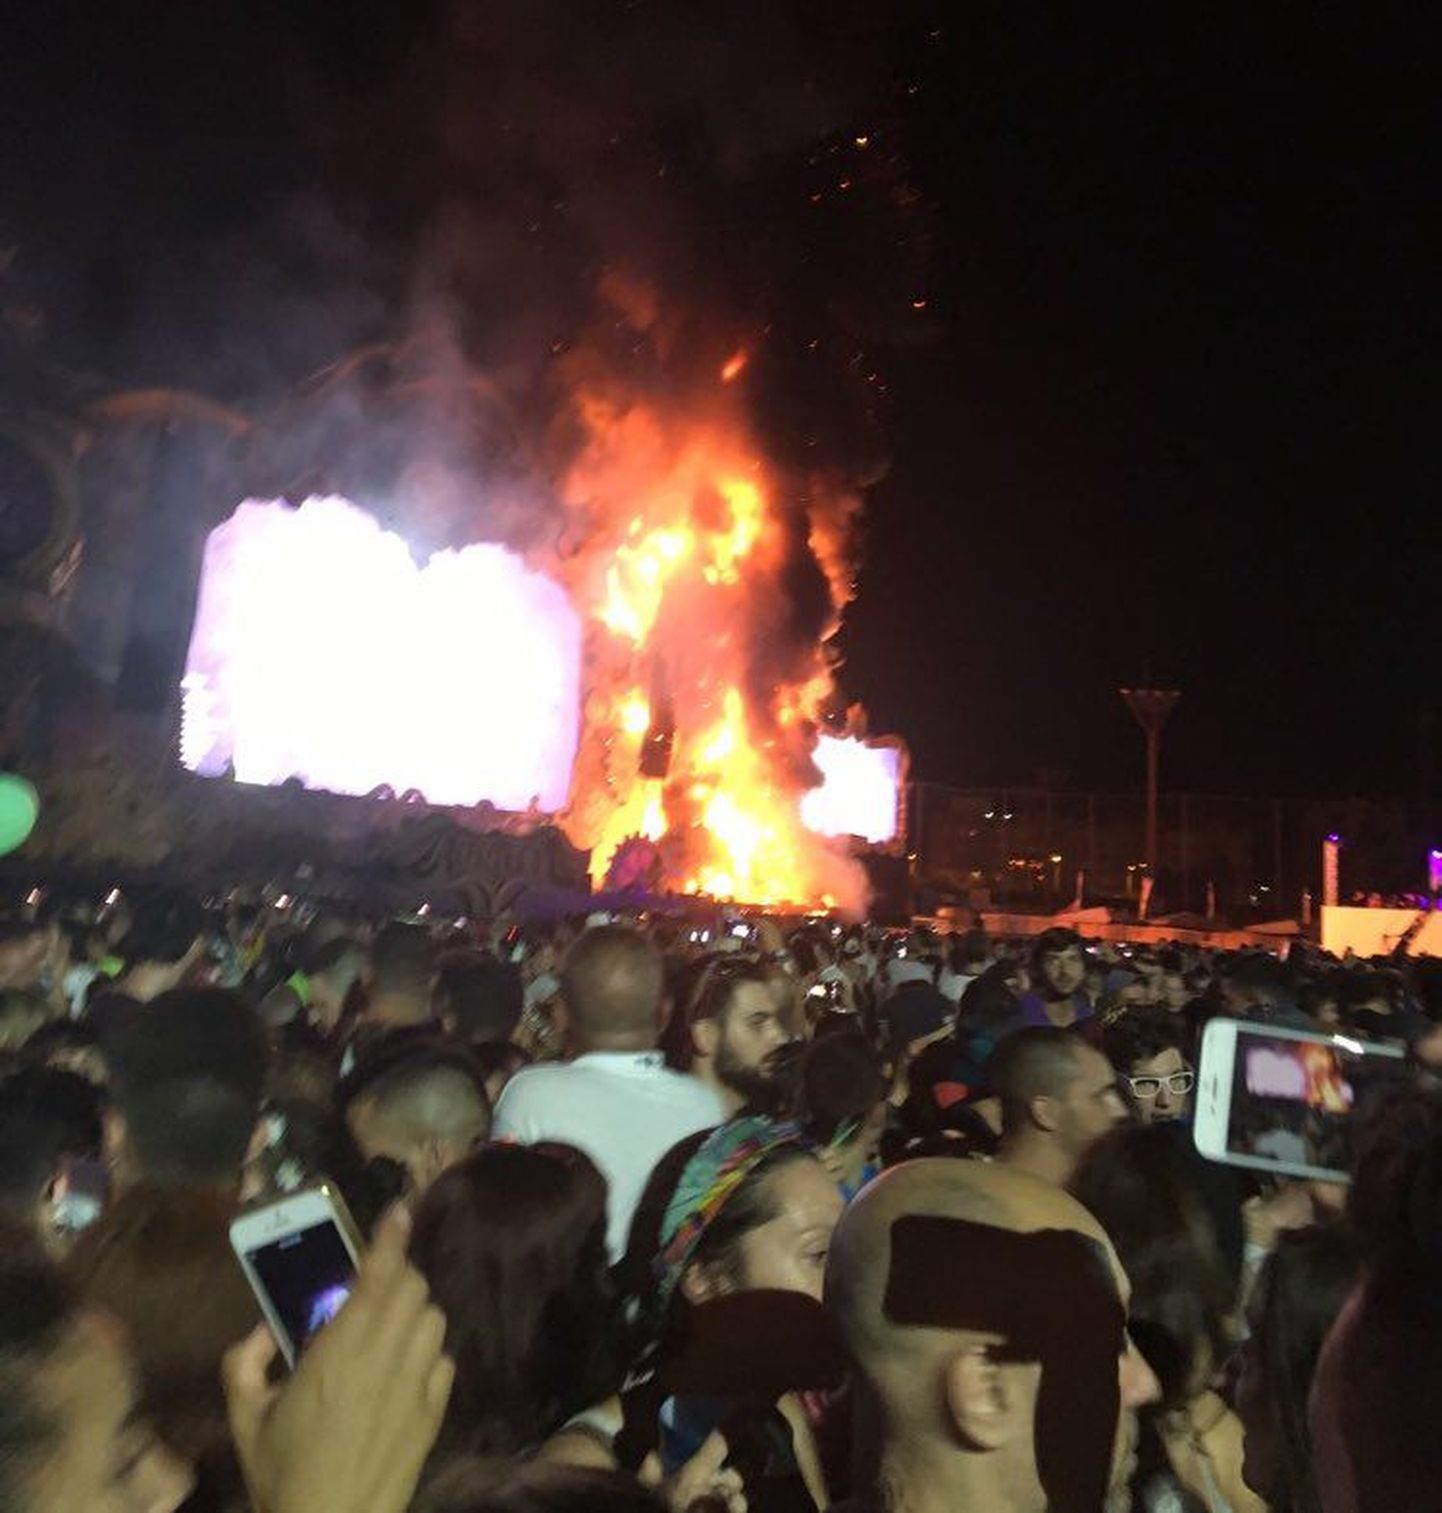 Pilt Hispaania muusikafestivalil põlenud lavast